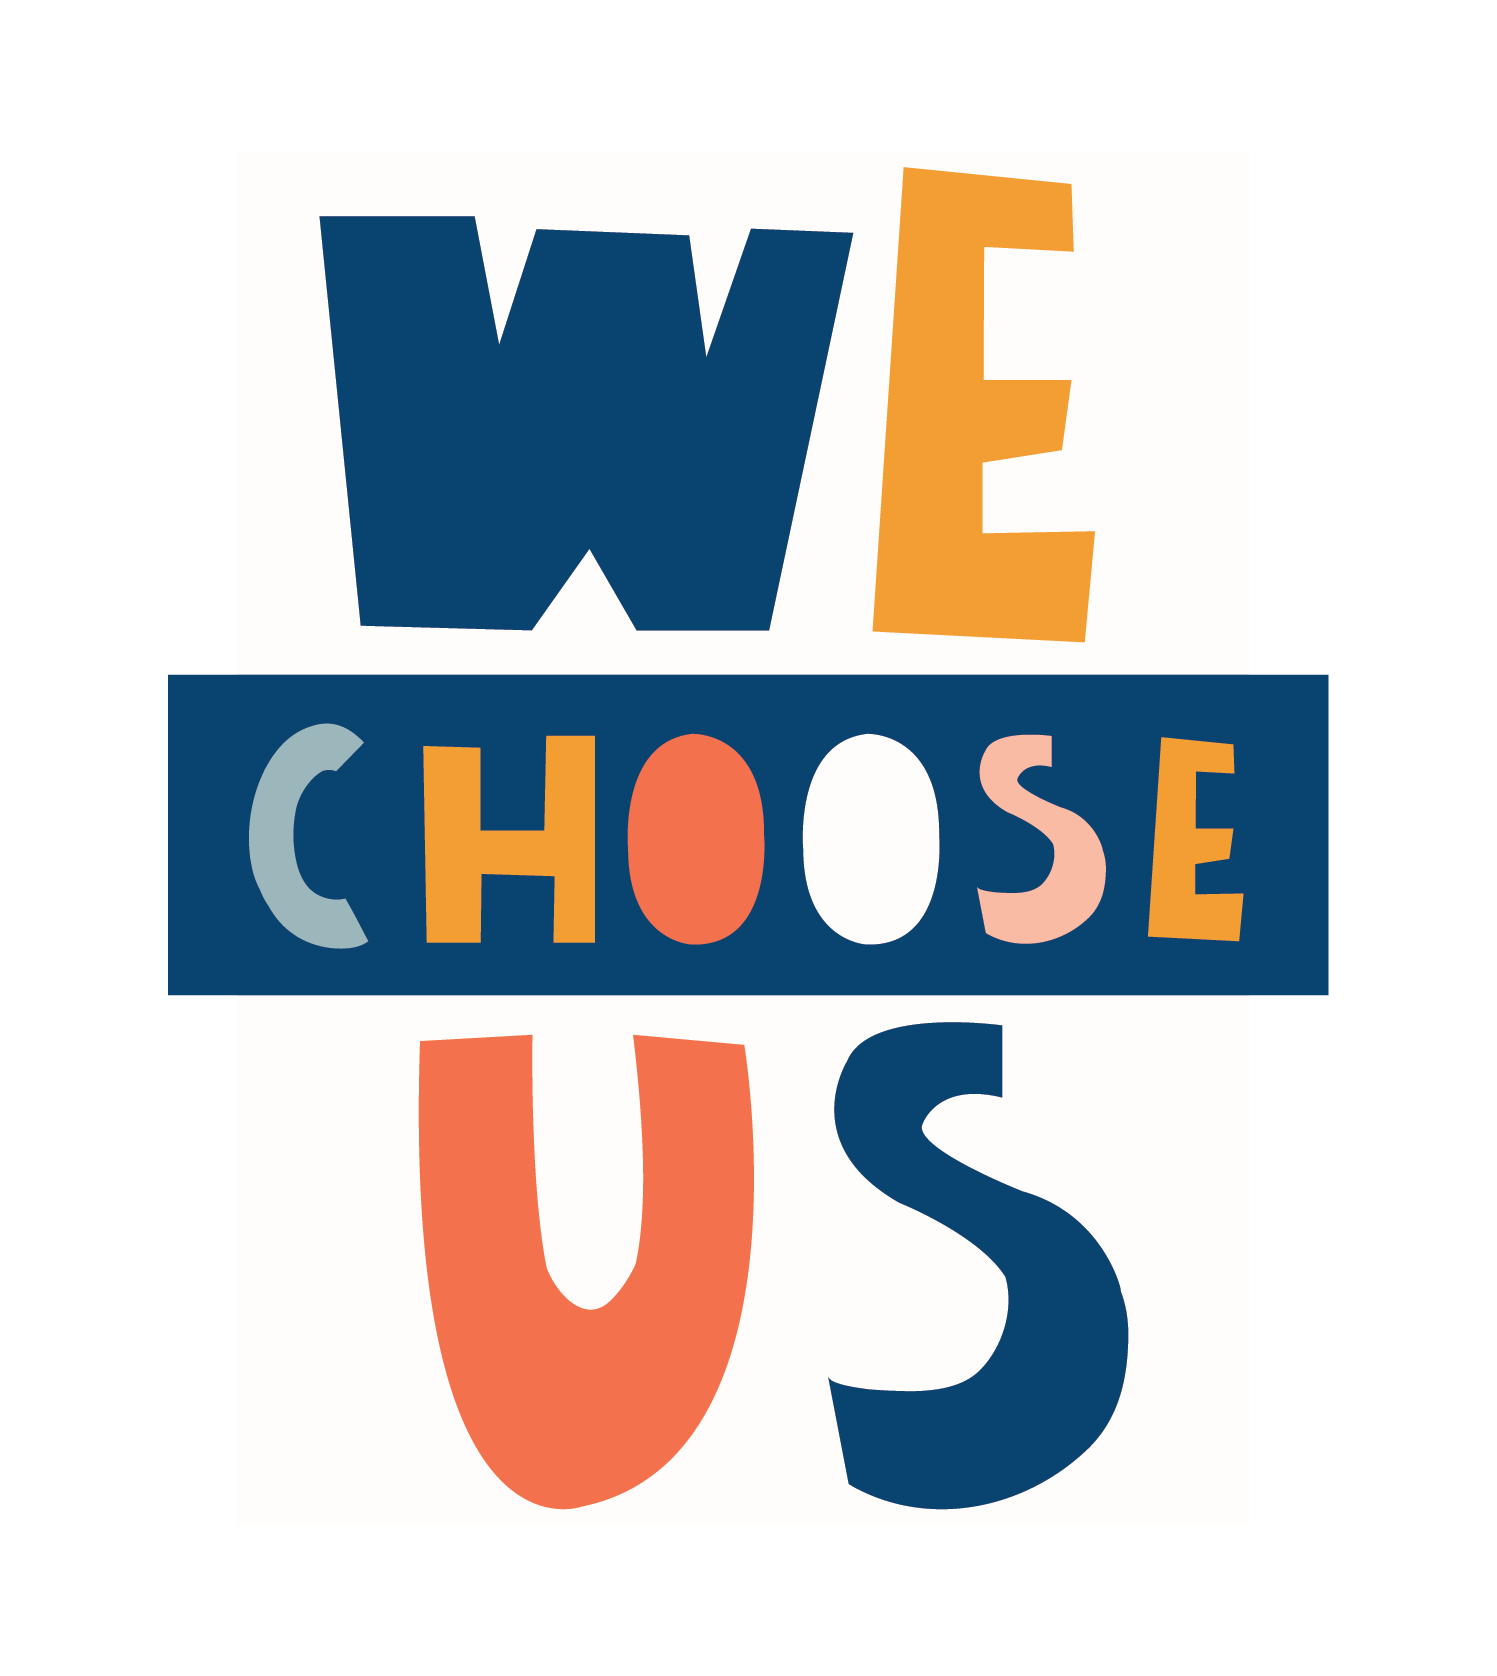 We Choose Us